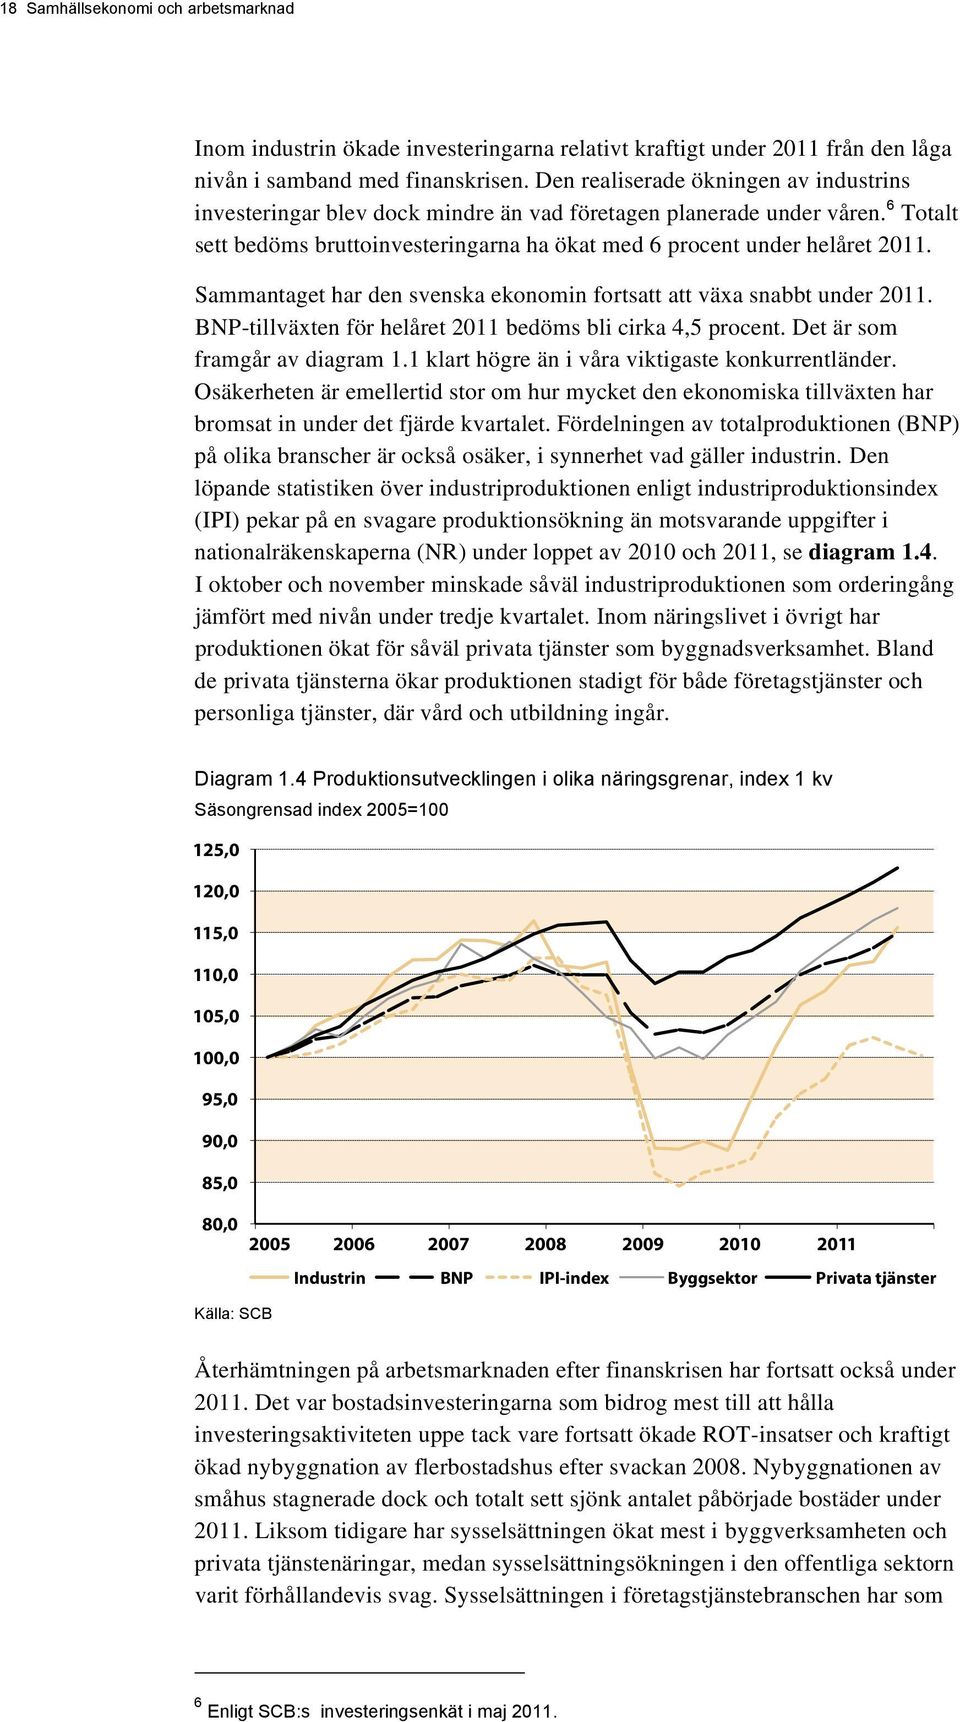 Sammantaget har den svenska ekonomin fortsatt att växa snabbt under 2011. BNP-tillväxten för helåret 2011 bedöms bli cirka 4,5 procent. Det är som framgår av diagram 1.